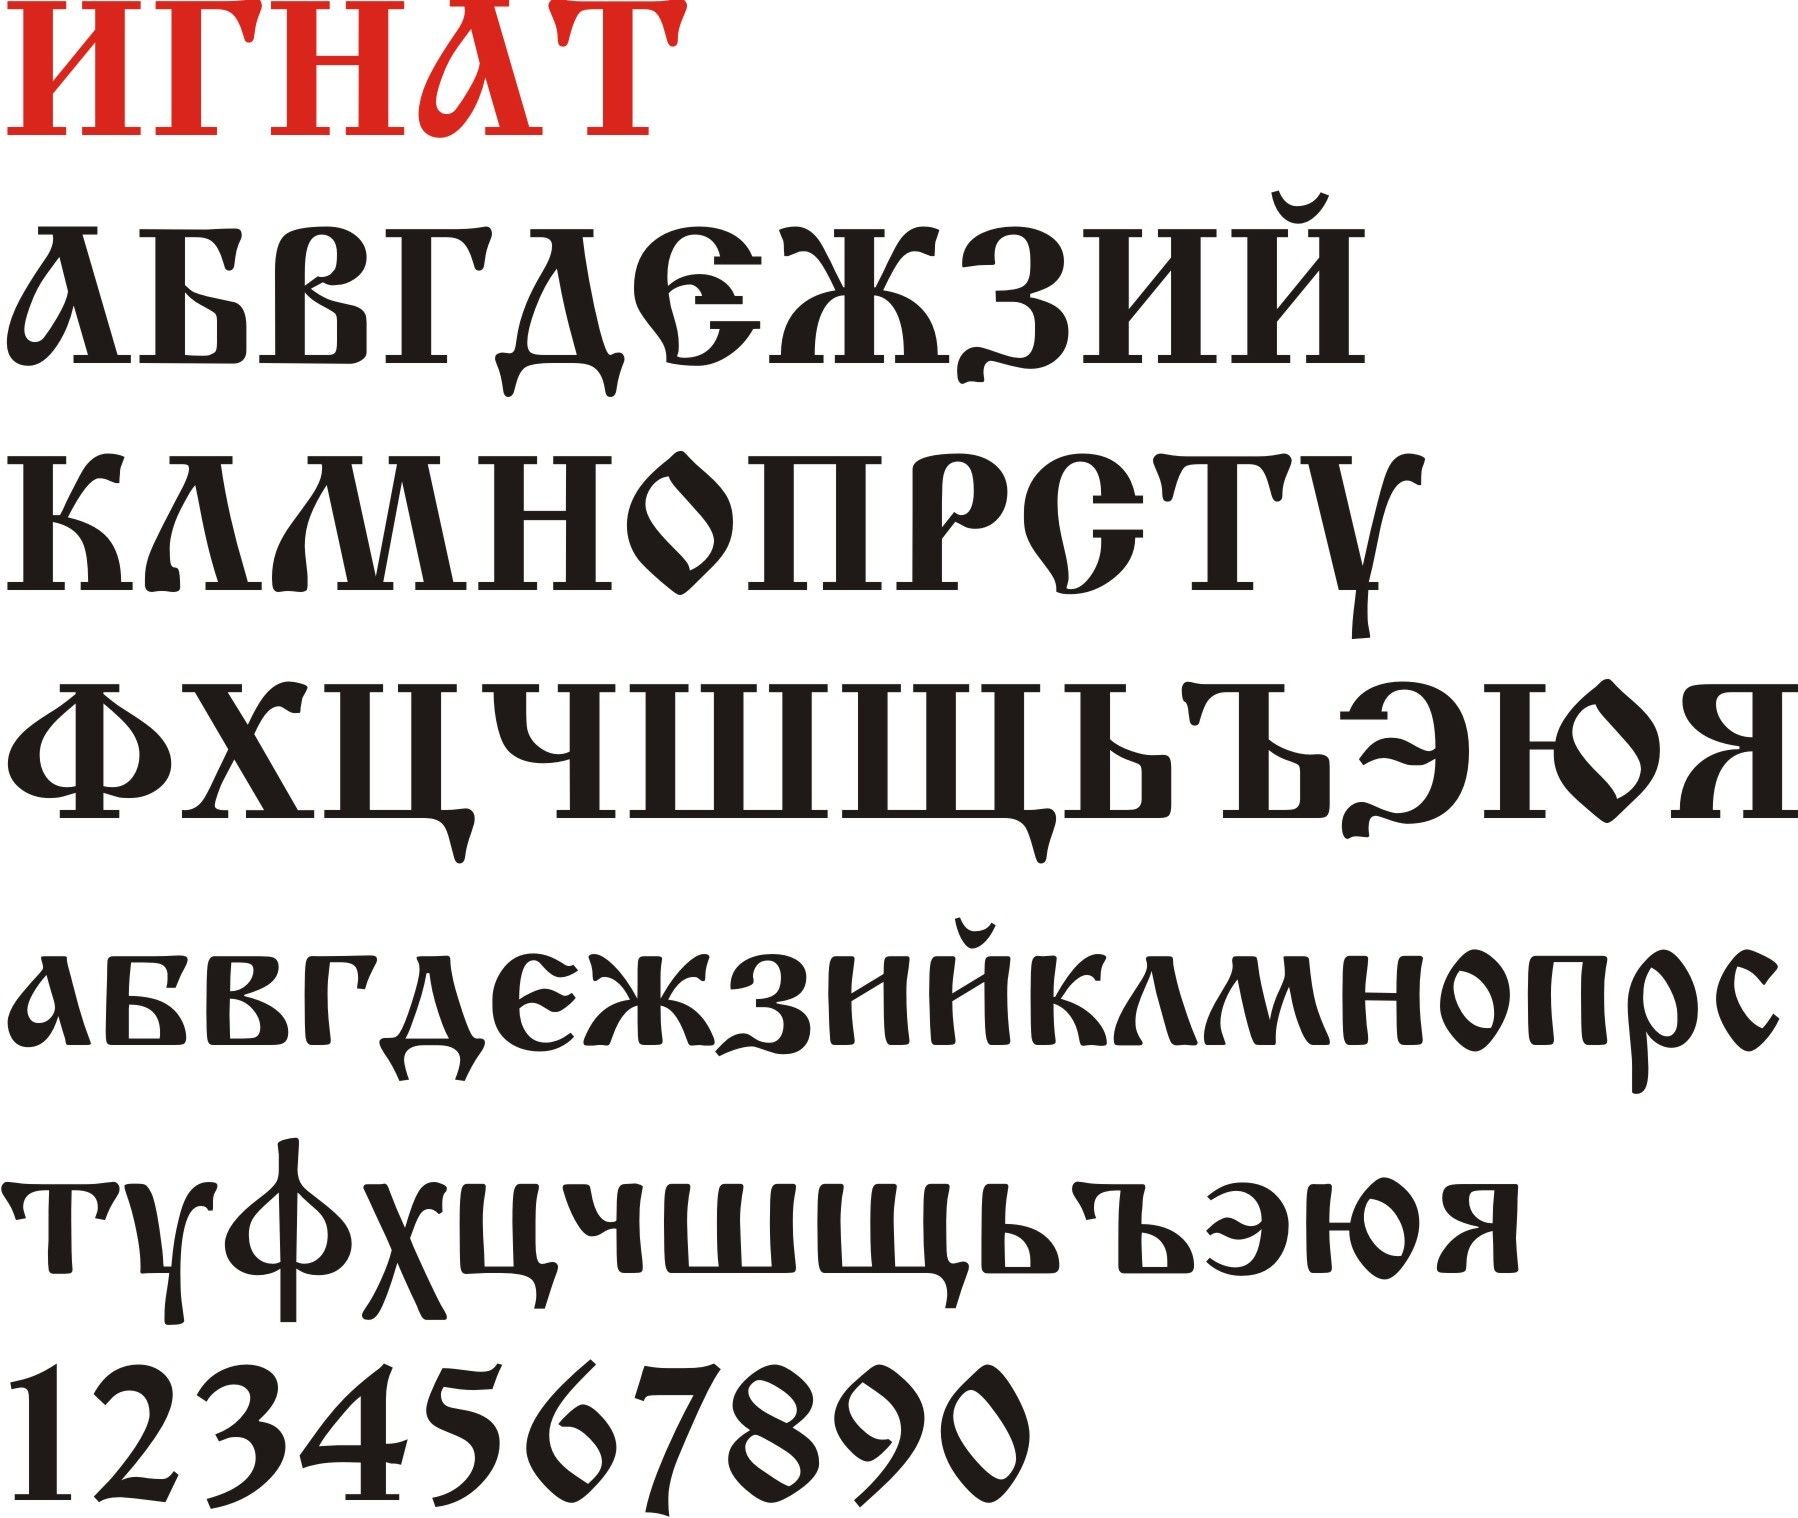 Кириллические шрифты: что это, где используют